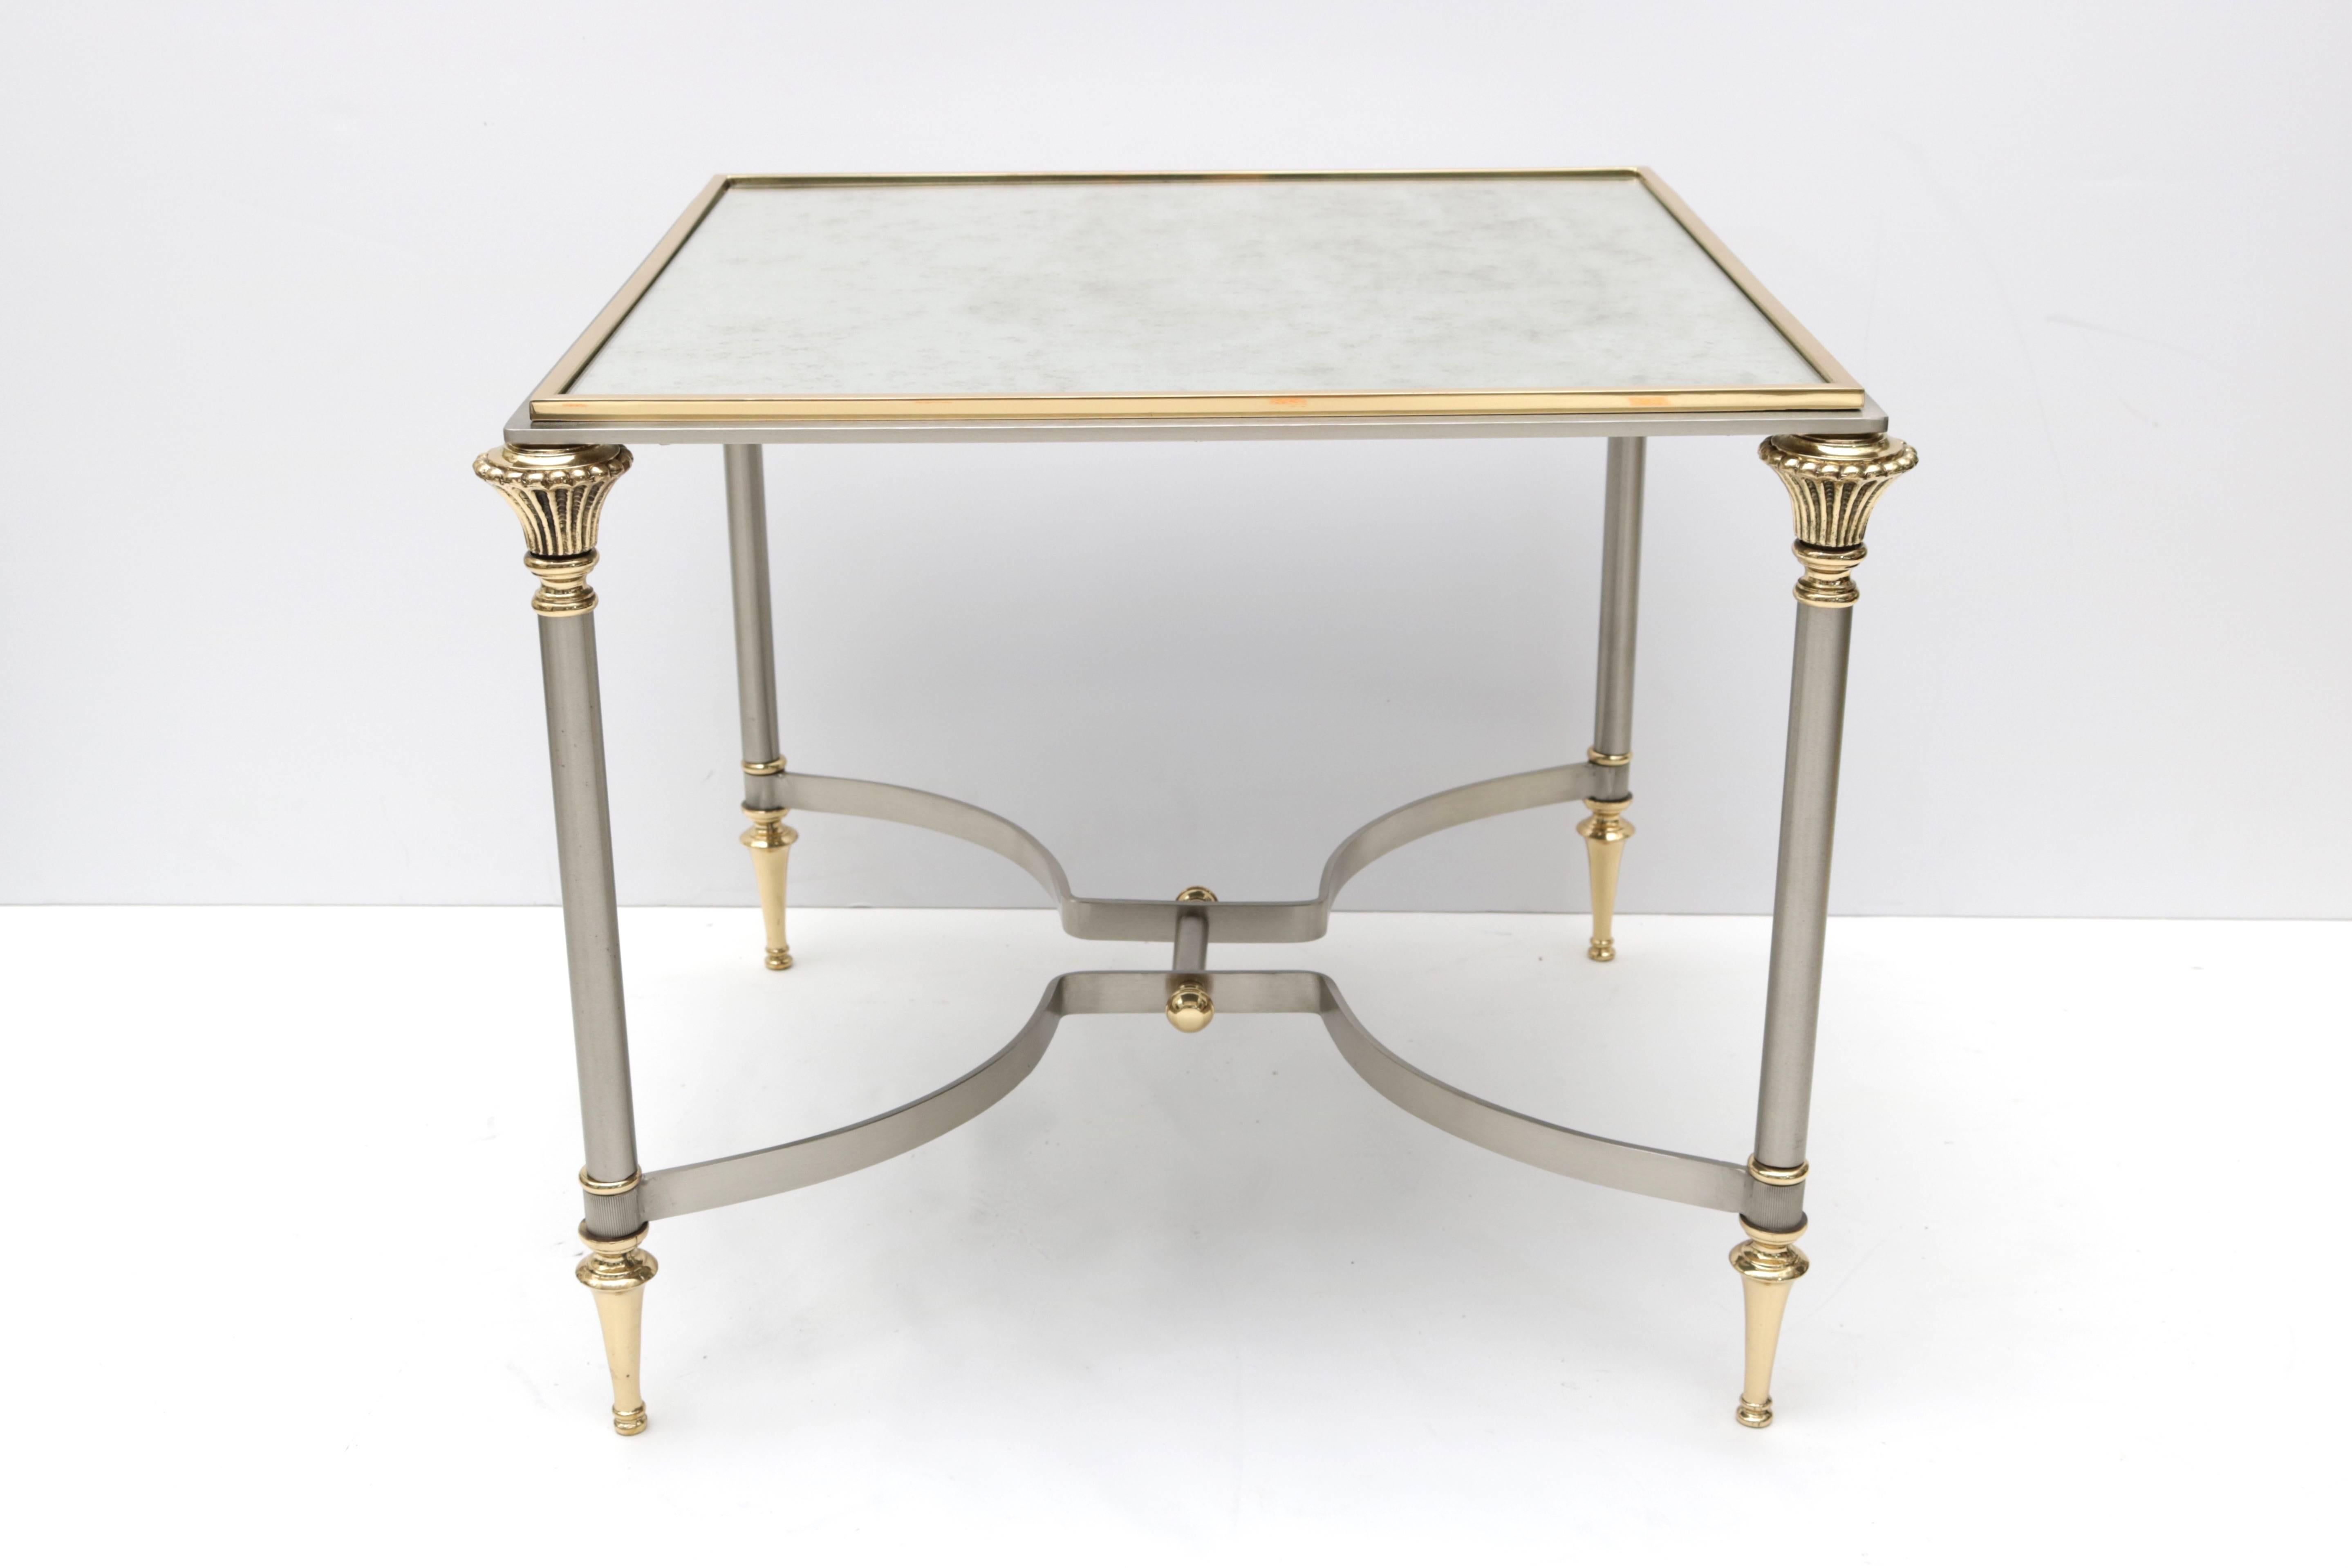 Cette table d'appoint élégante, aux lignes Louis XVI, est tout à fait dans le style des pièces créées par la Maison Jansen. La combinaison du laiton et de l'acier satiné s'intègre parfaitement à tous les intérieurs.

Note : Cette pièce a été polie